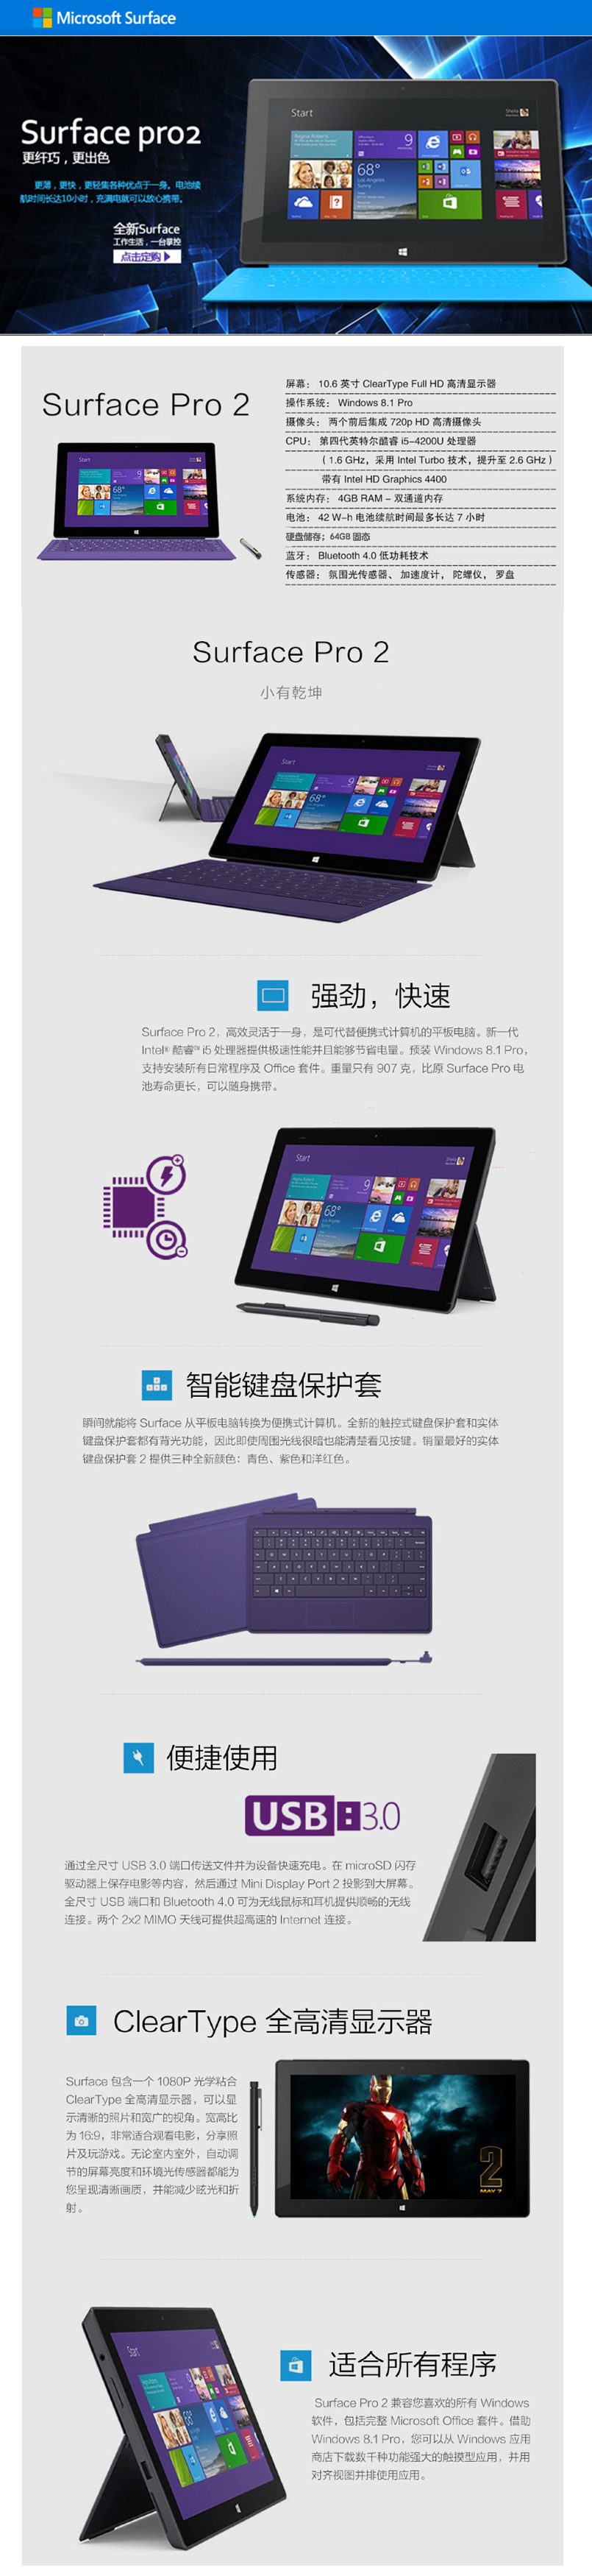 微软Surface Pro 2超级本笔记本电脑租赁 I5处理器/4G内存/64G固态